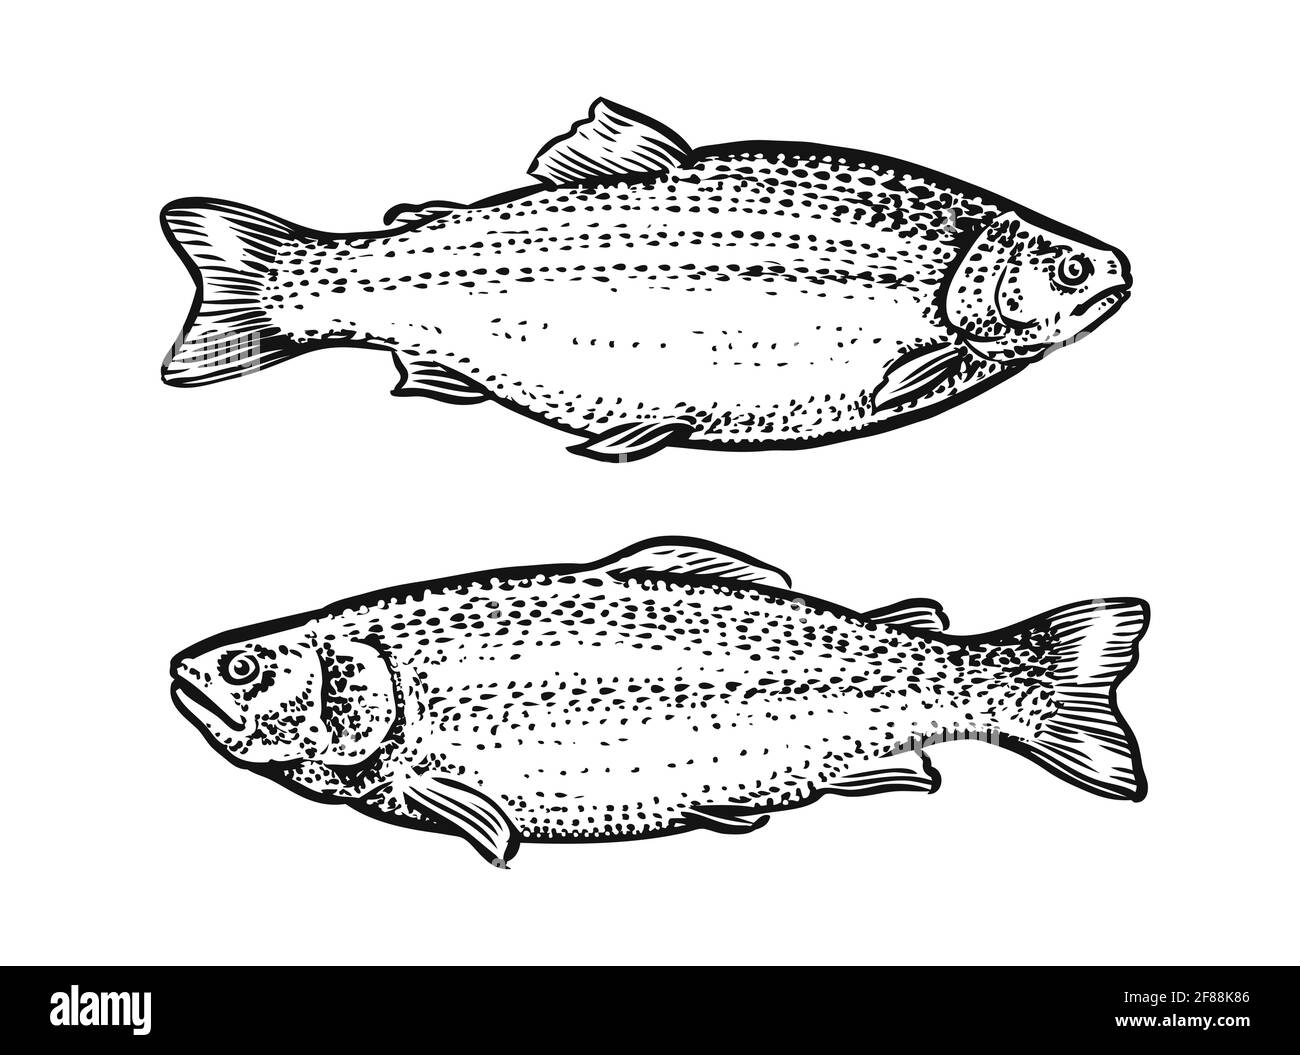 Schizzo di pesce. Illustrazione vettoriale disegnata a mano della trota, salmone isolato su sfondo bianco Illustrazione Vettoriale